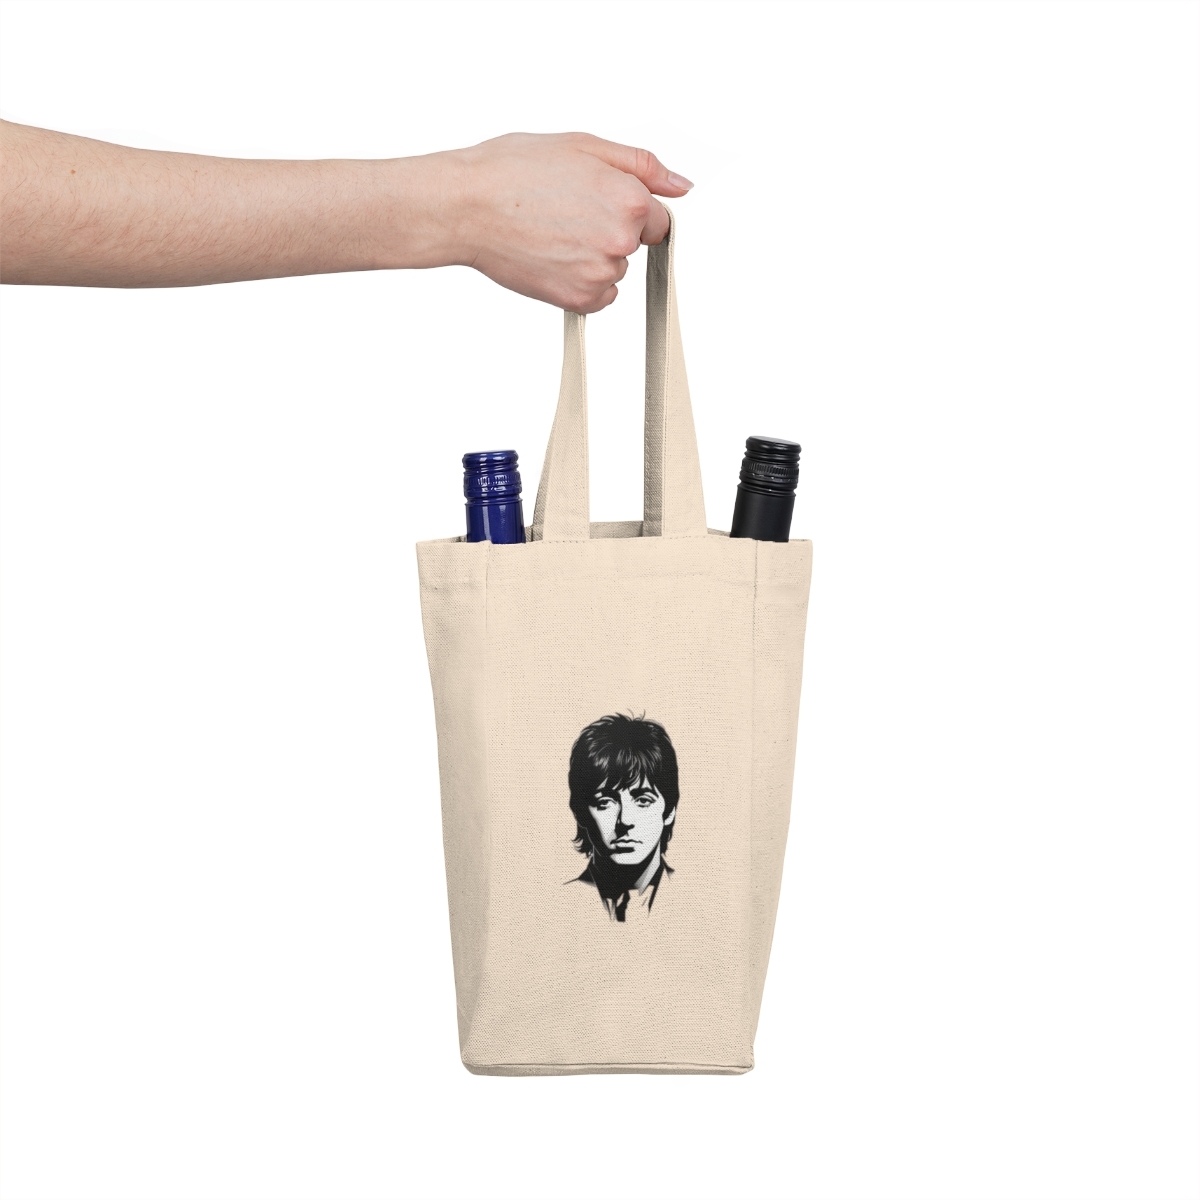 Double Wine Tote Bag with Paul McCartney Portrait Print 100% Cotton Canvas - $31.93